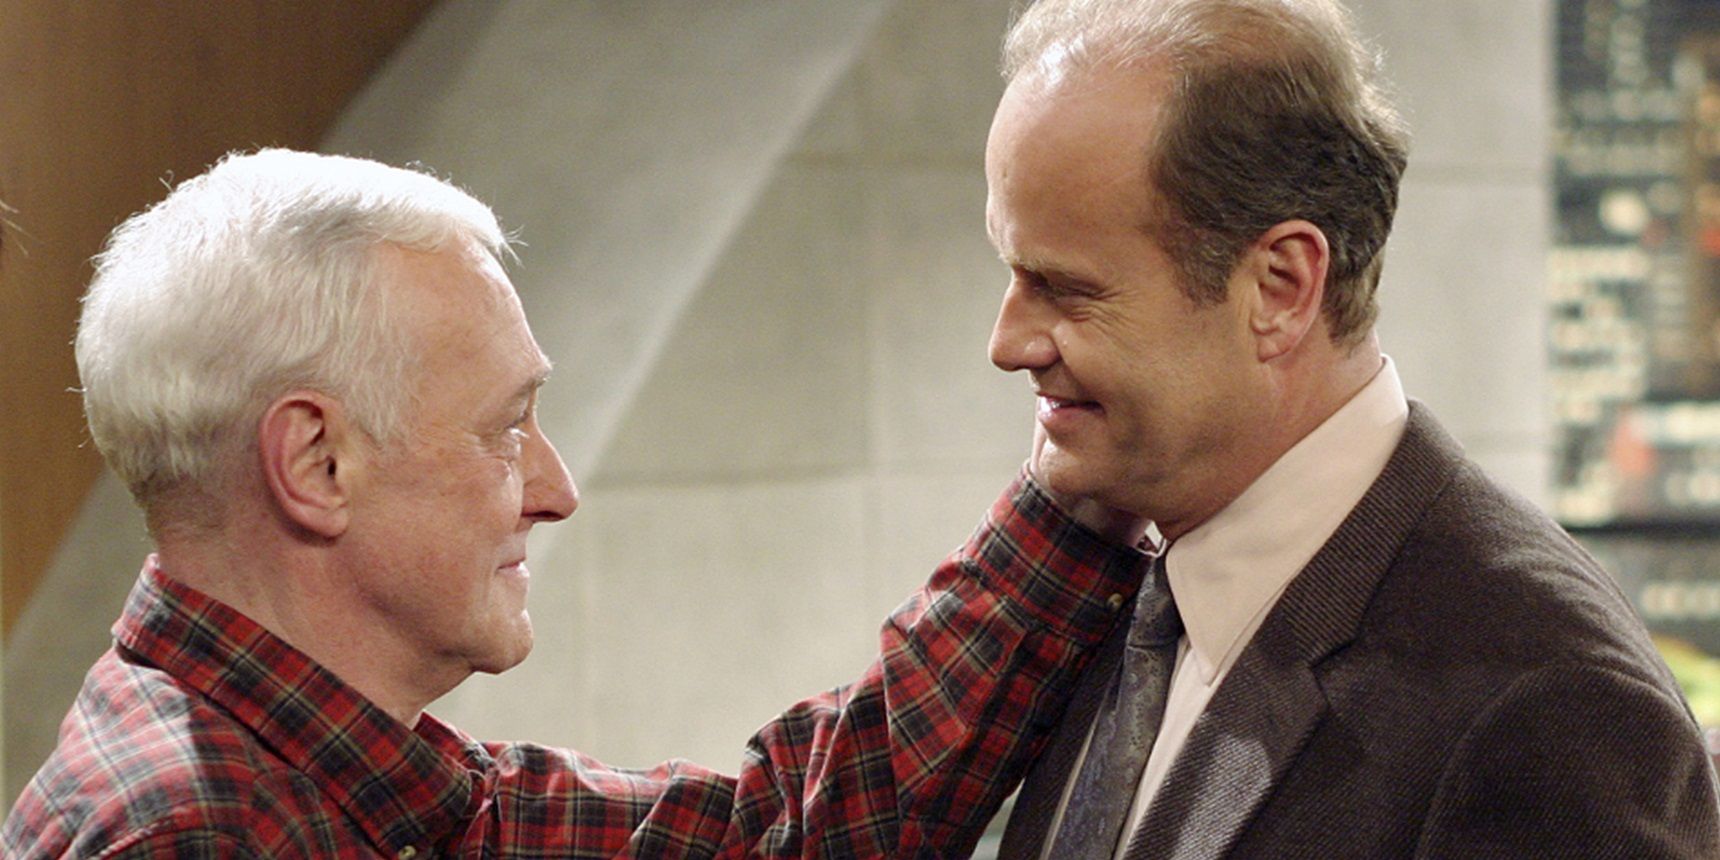 Frasier and Marty share a tender moment in Frasier